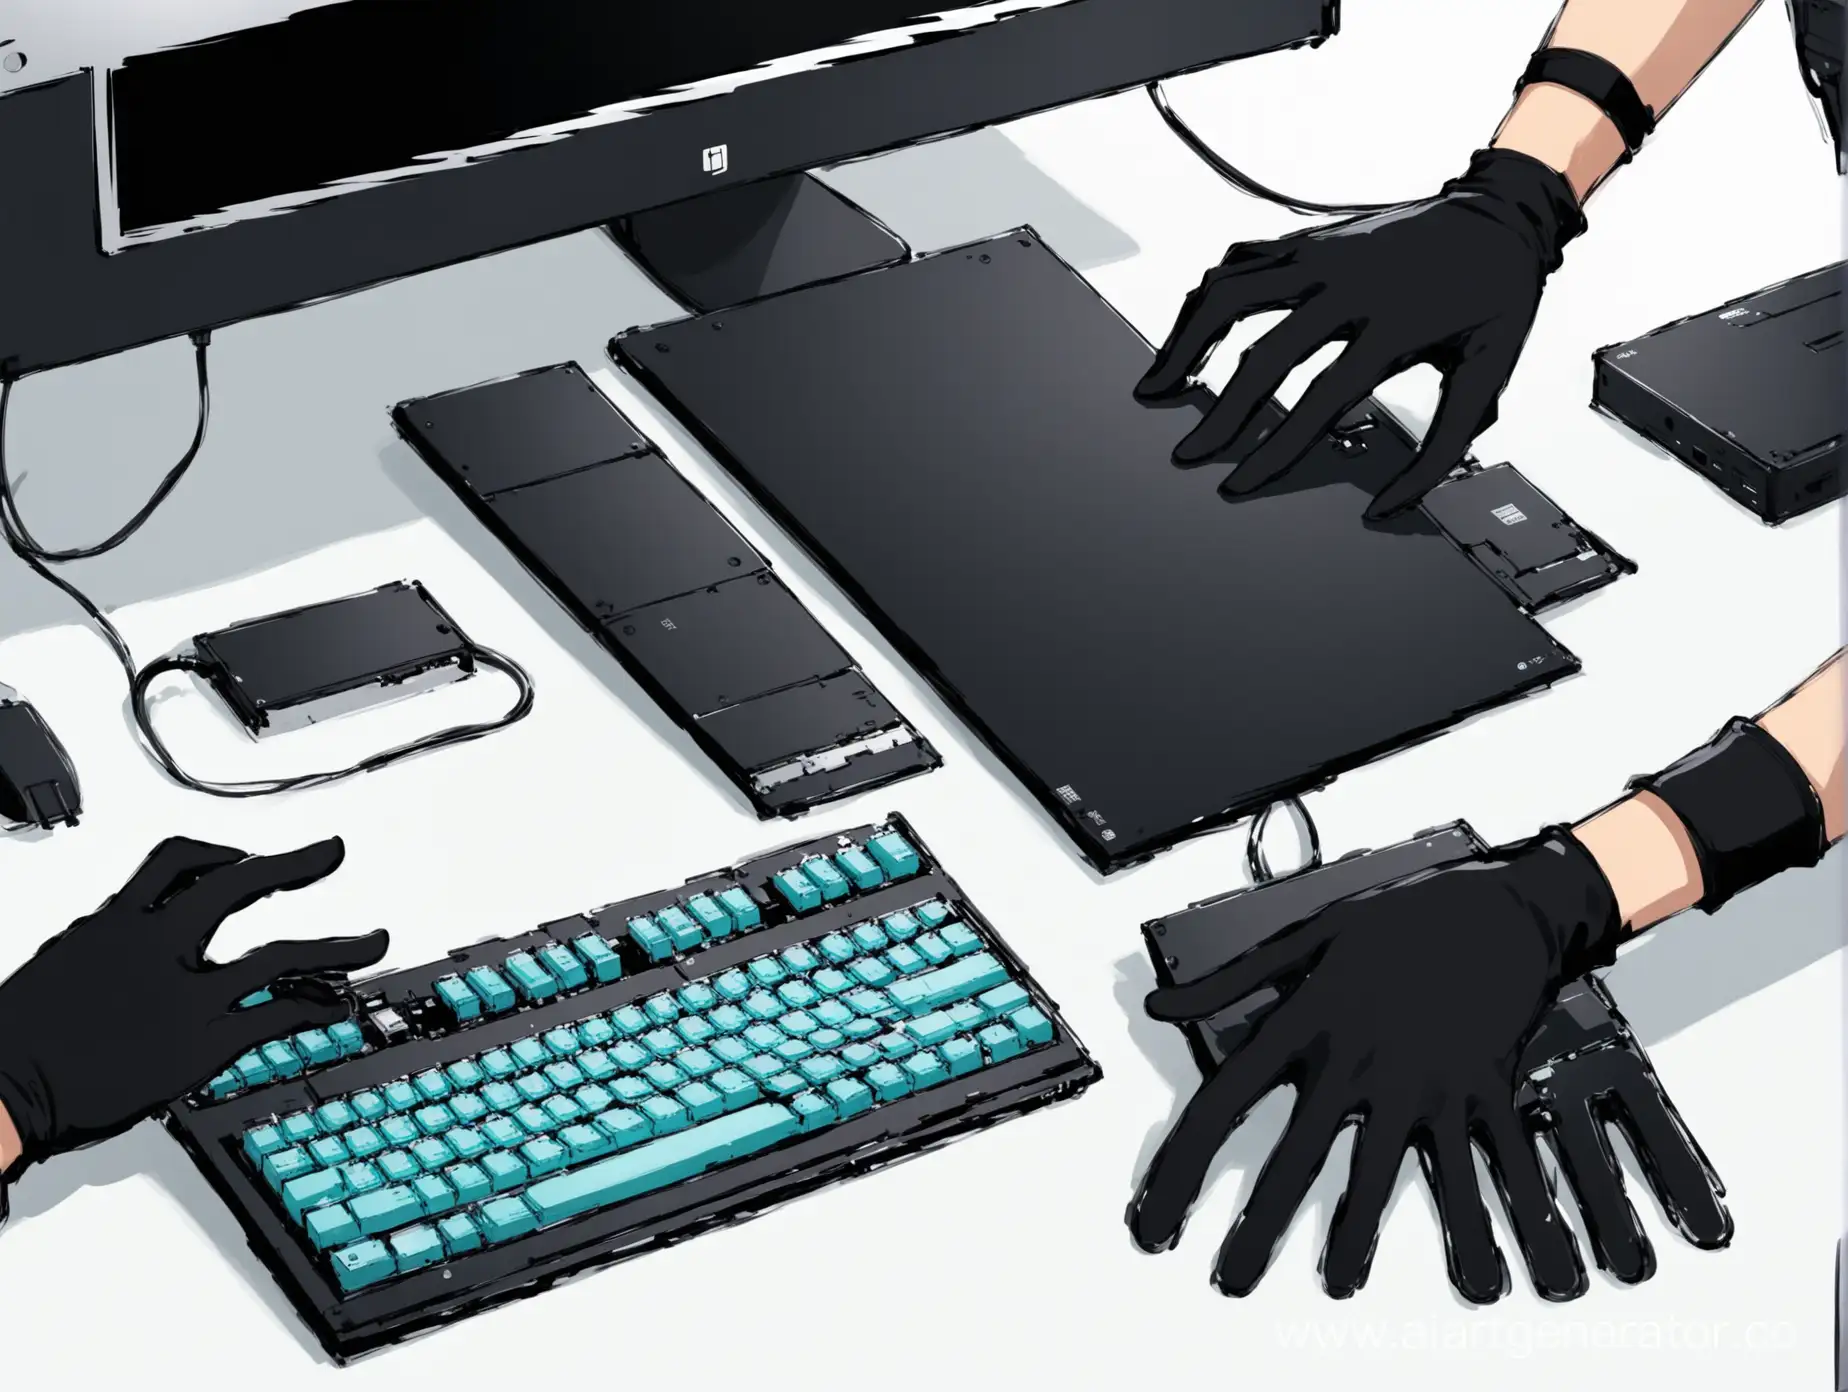 Hands-Assembling-Personal-Computer